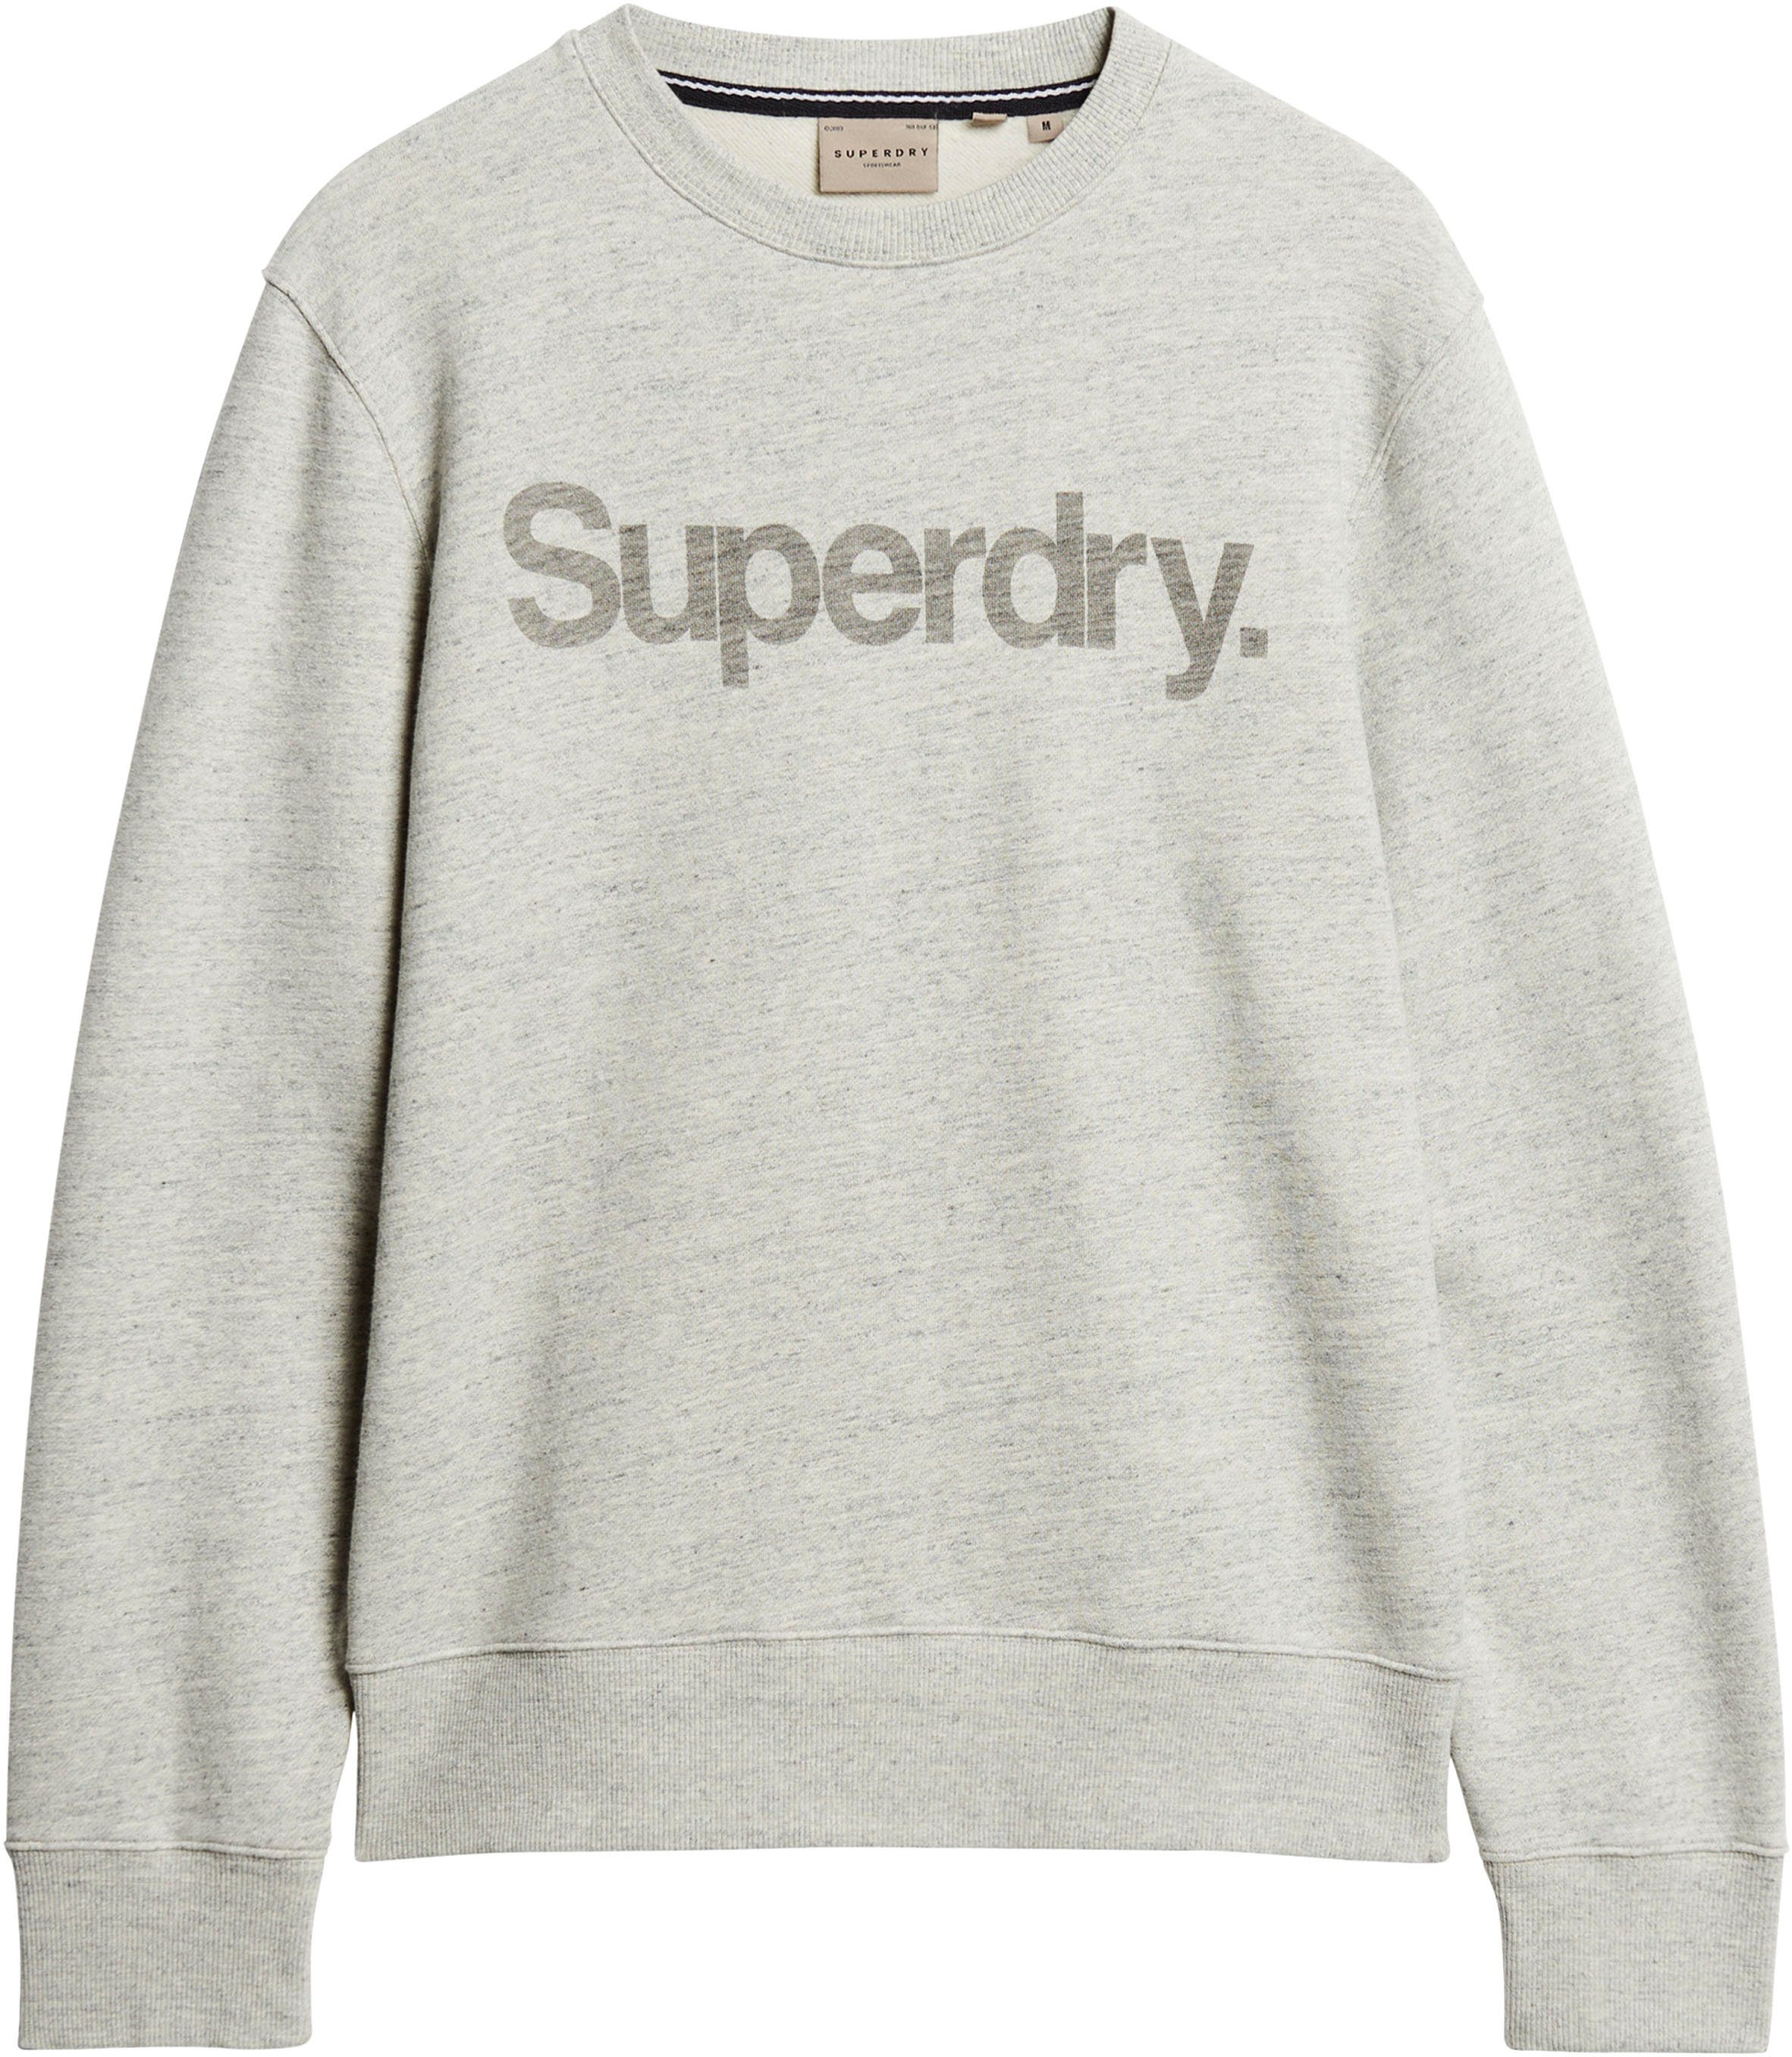 Superdry Sweatshirt LOOSE LOGO grey CITY CORE athletic marl CREW